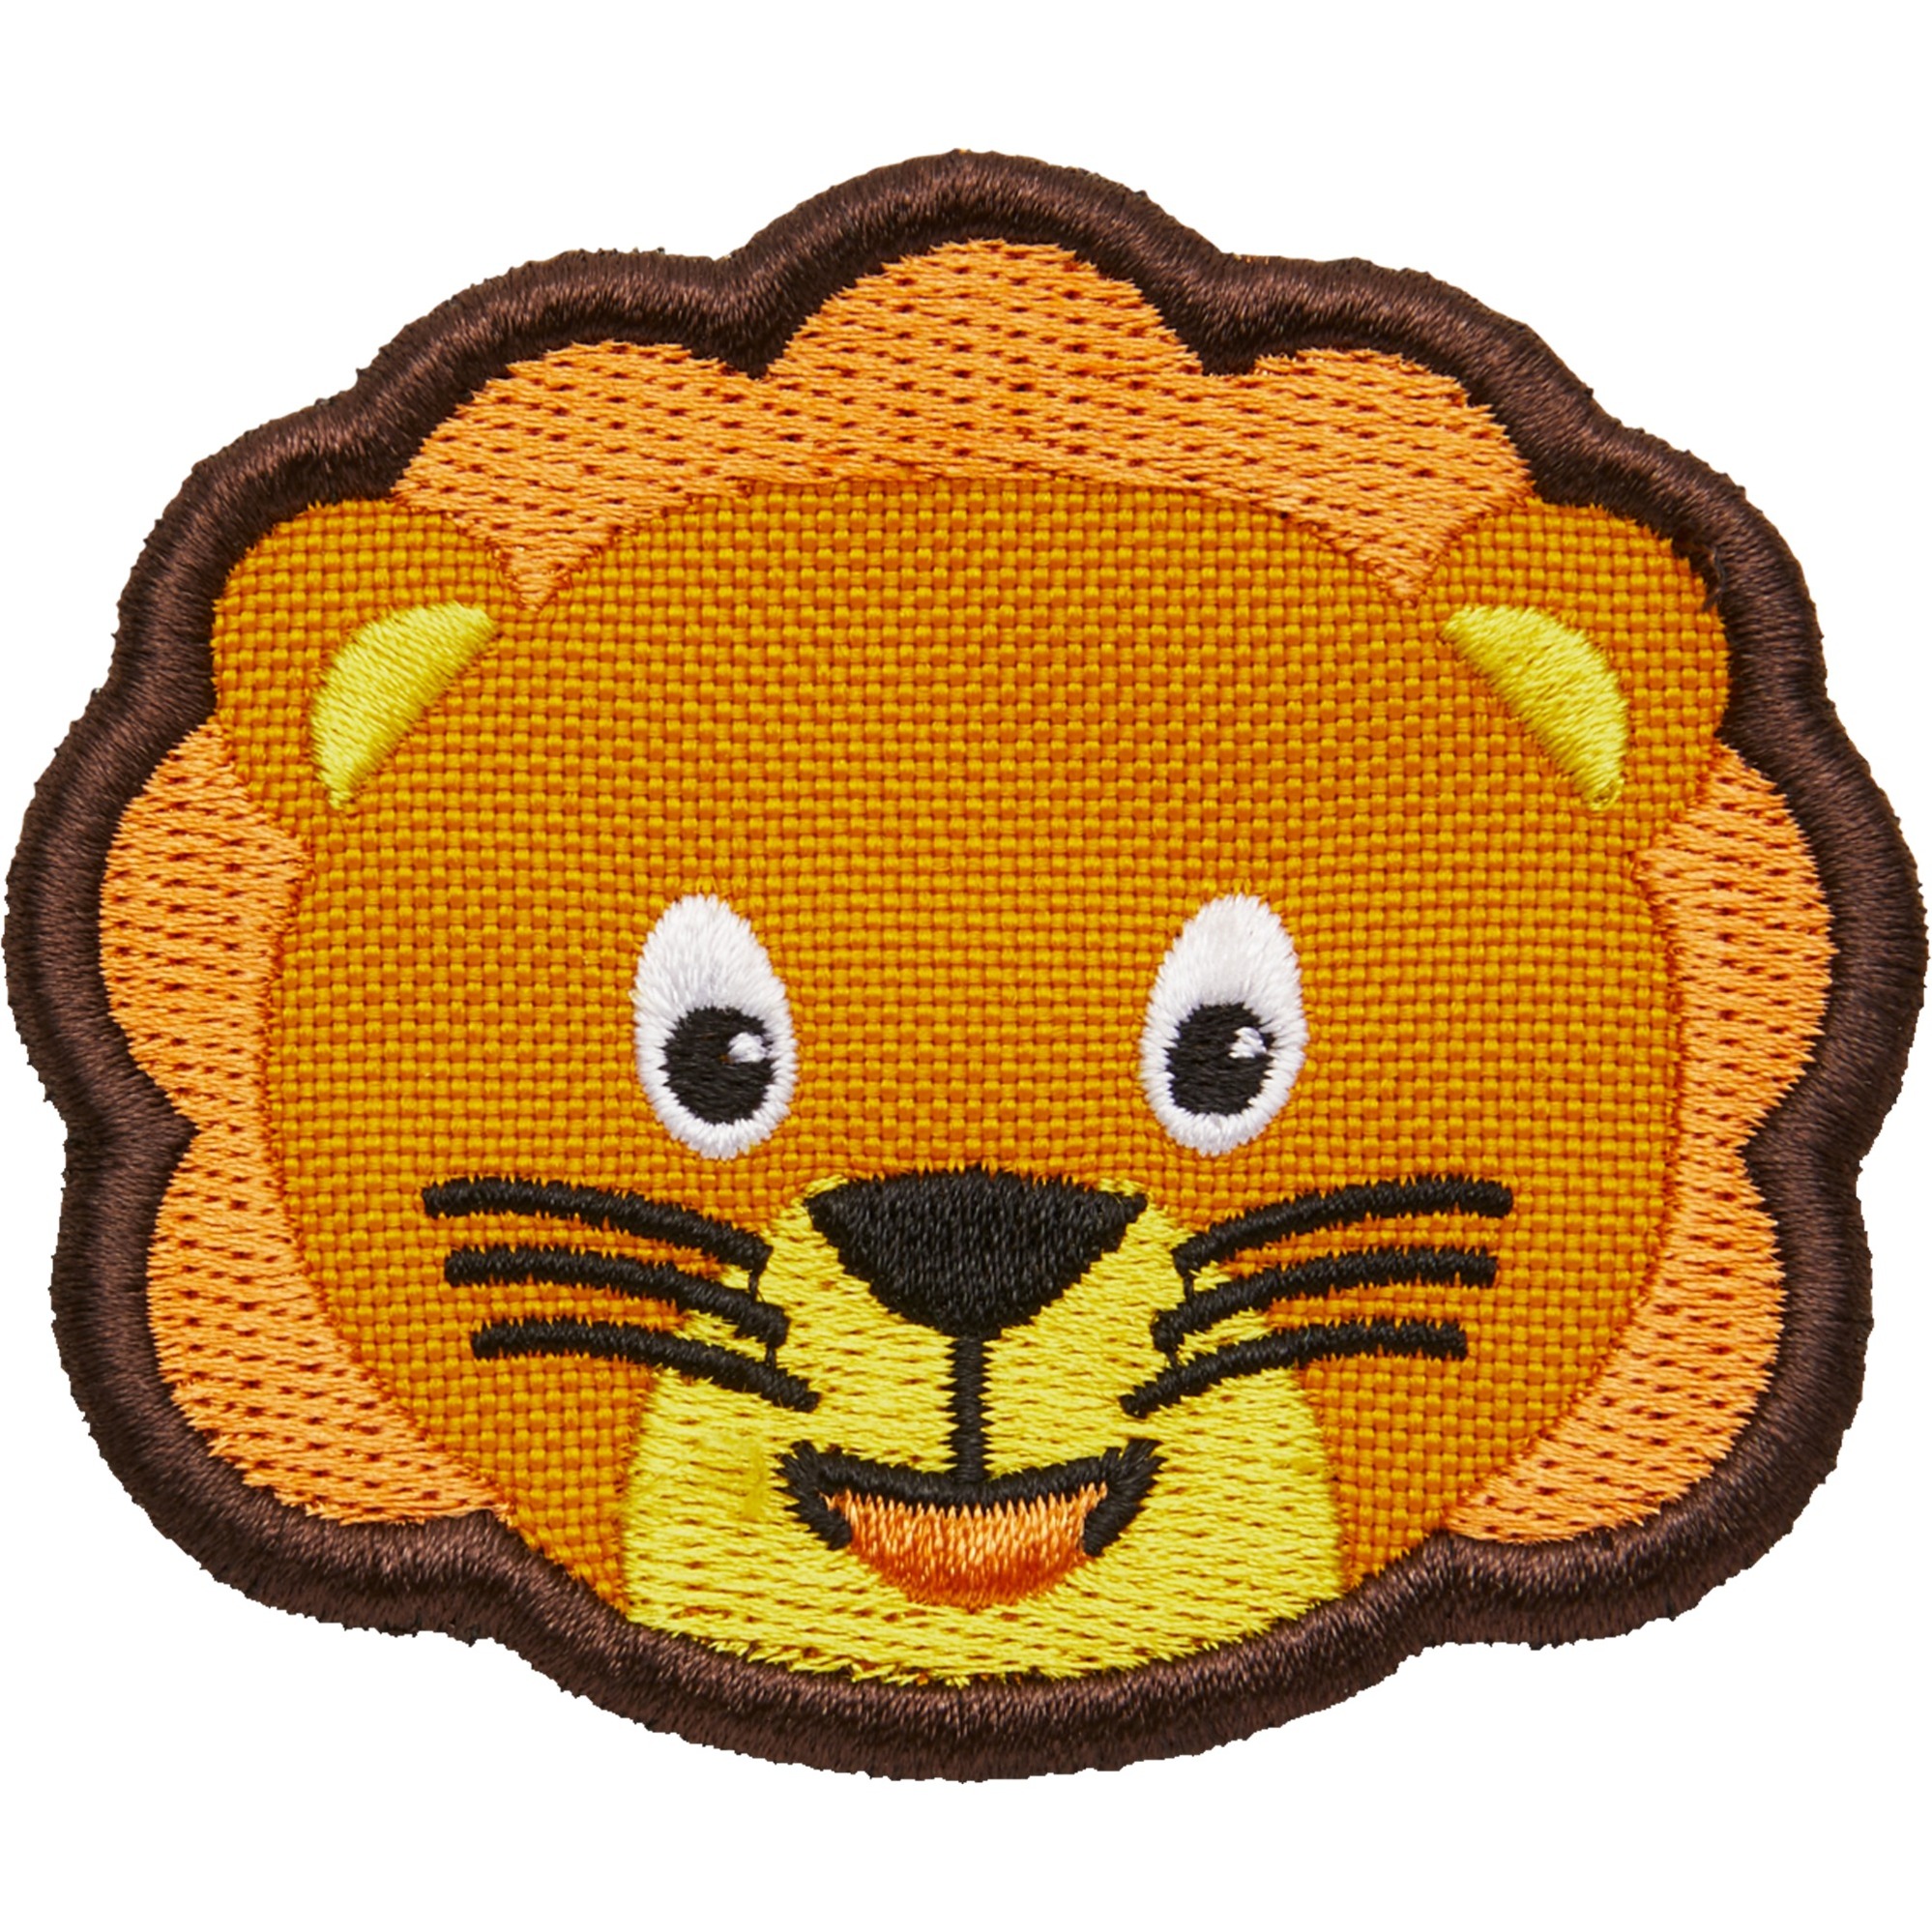 Image of Alternate - Klett-Badge Löwe, Patch online einkaufen bei Alternate